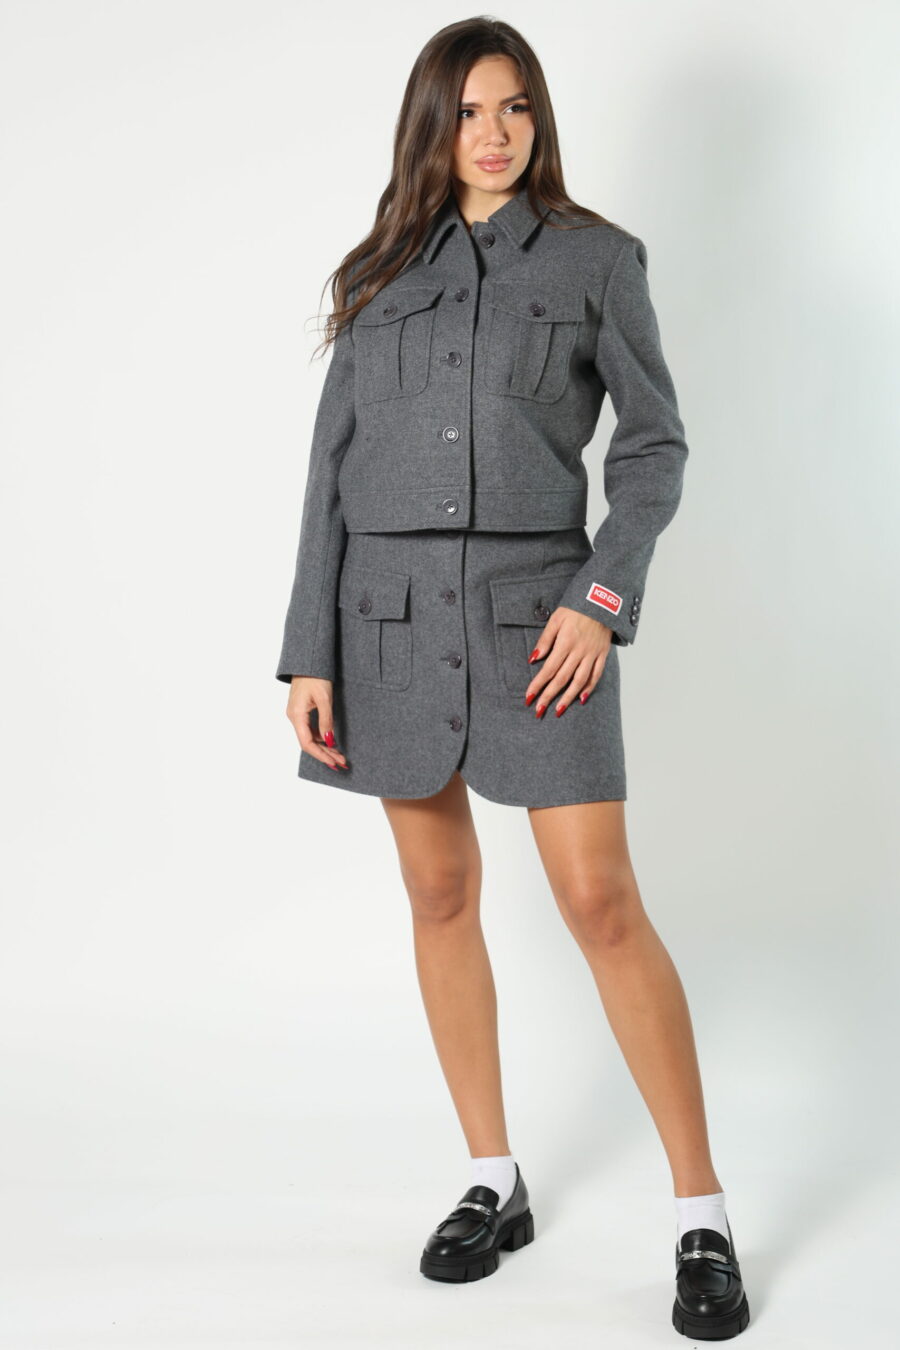 Grey jacket with mini-logo on sleeve - 8052865435499 410 1 scaled